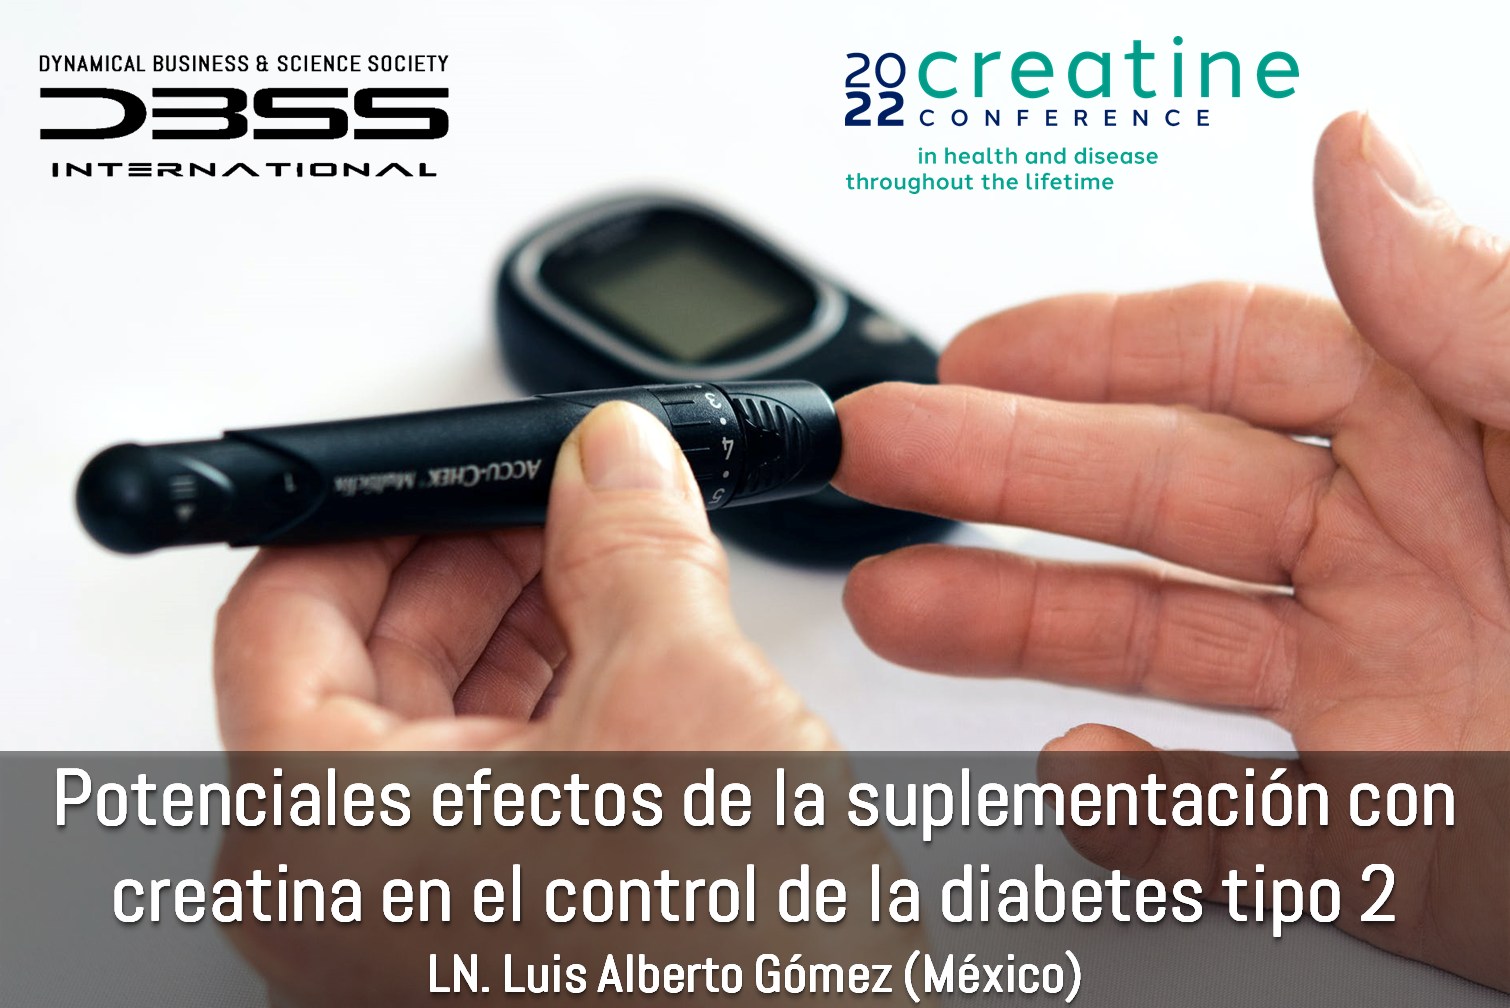 Potenciales efectos de la suplementación con creatina en el control de la diabetes tipo 2